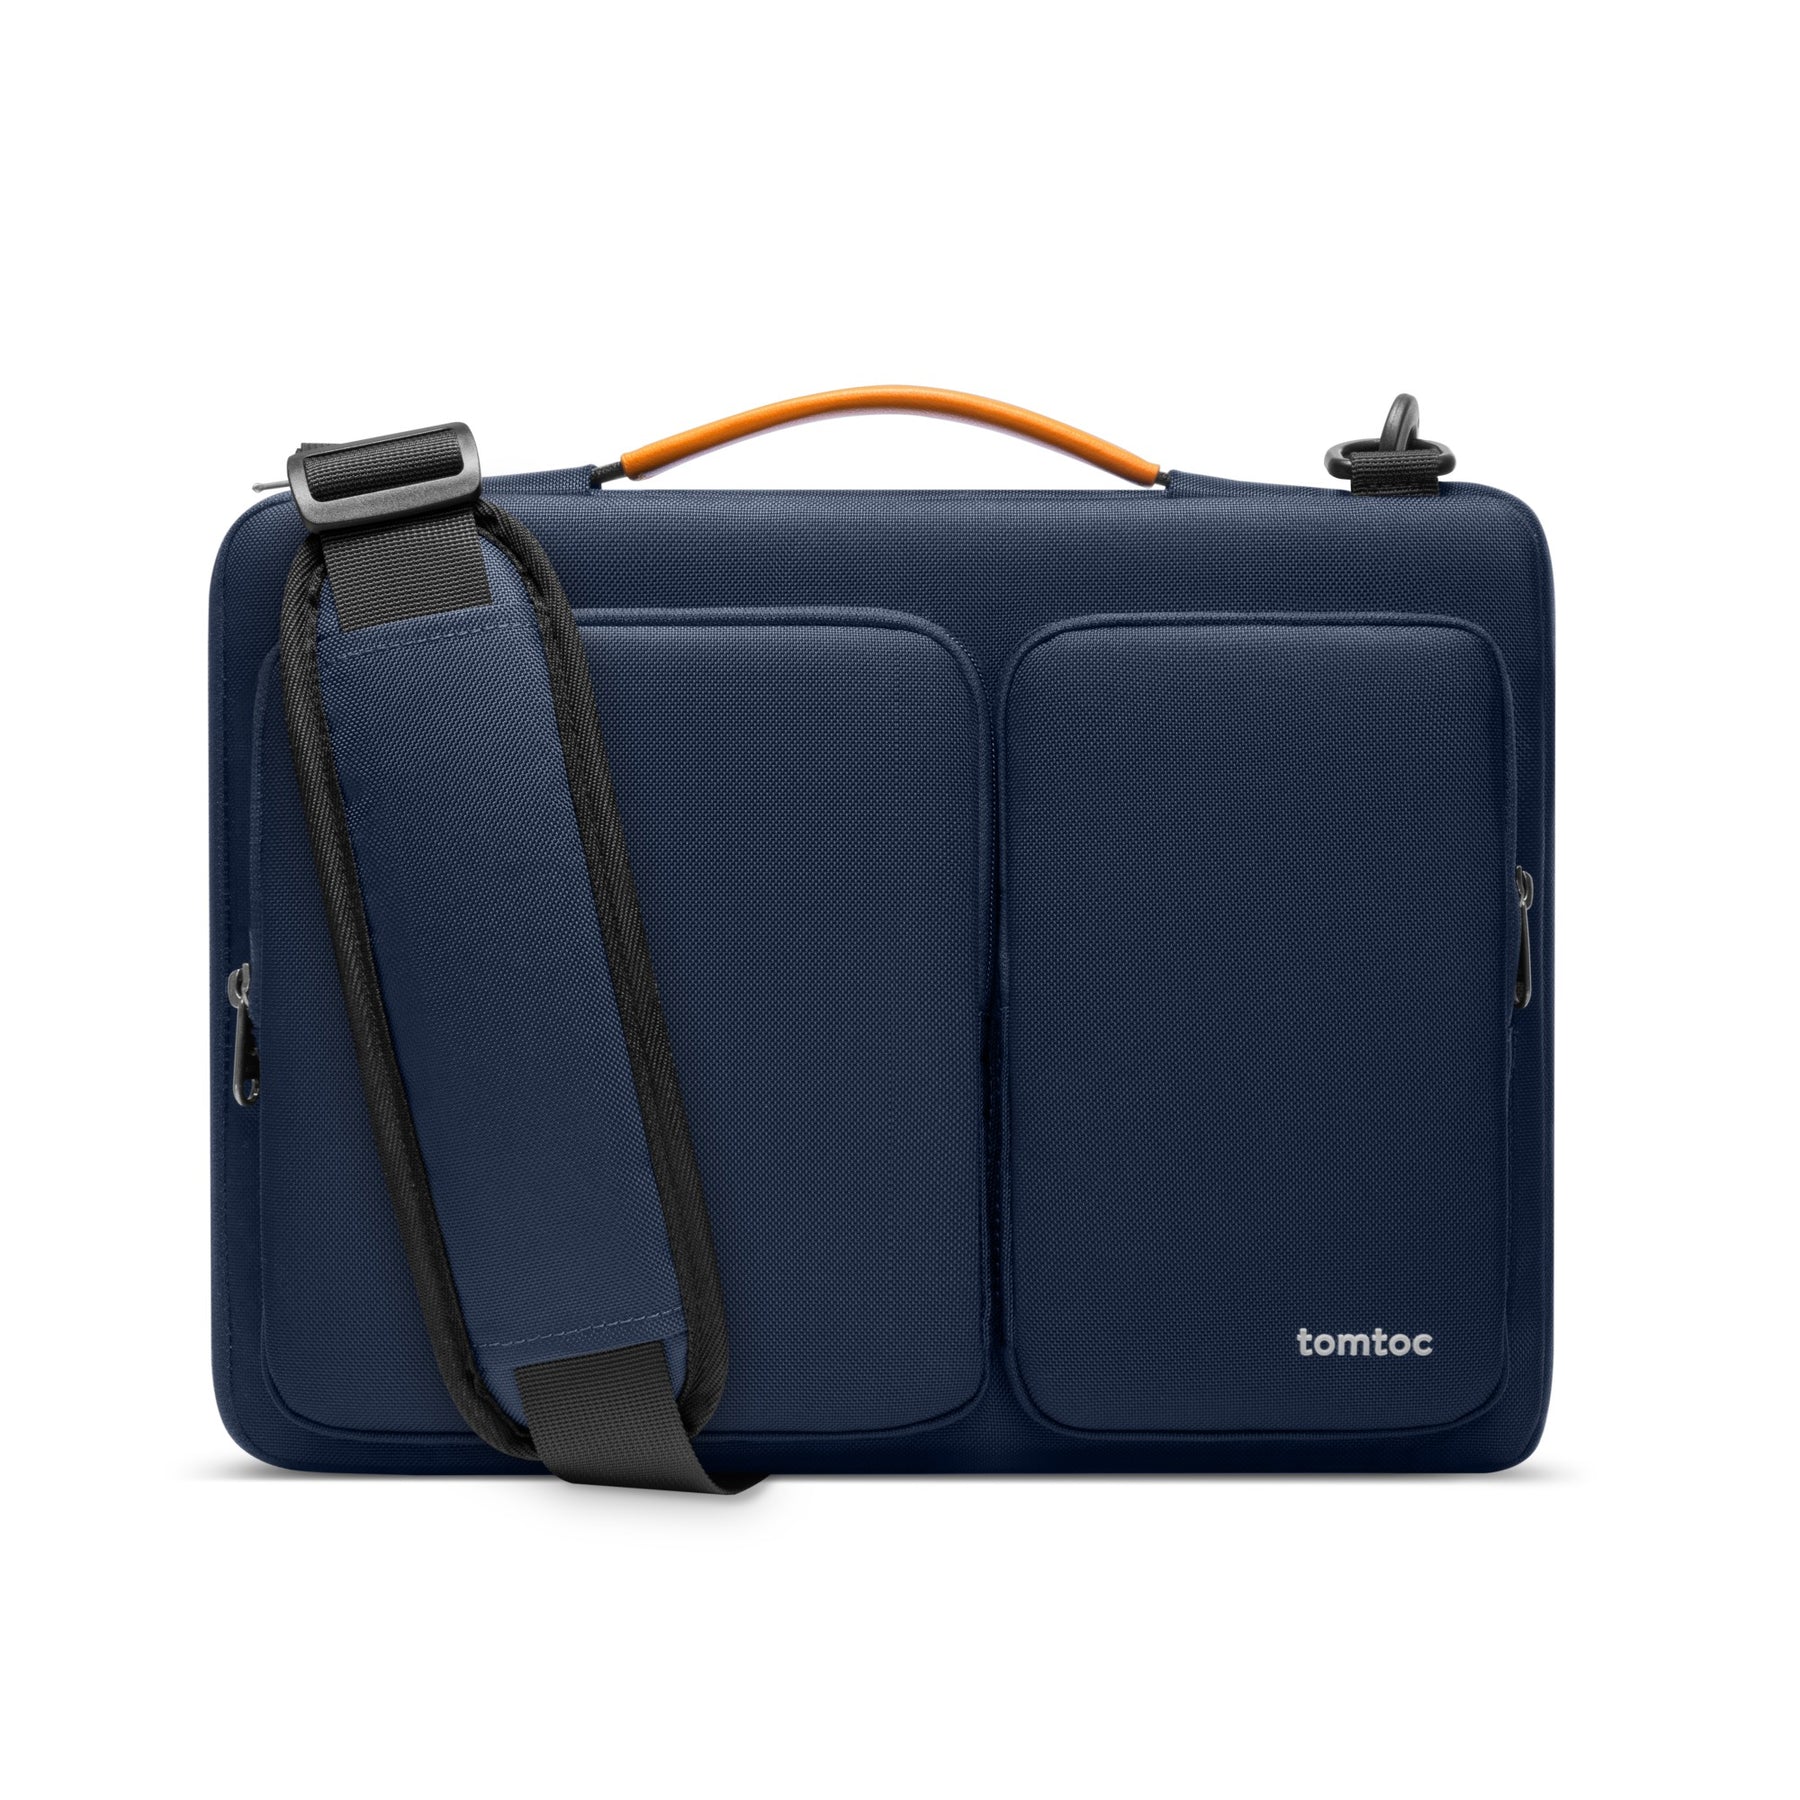 Defender-A42 Laptop Shoulder Bag For 15-inch MacBook Air